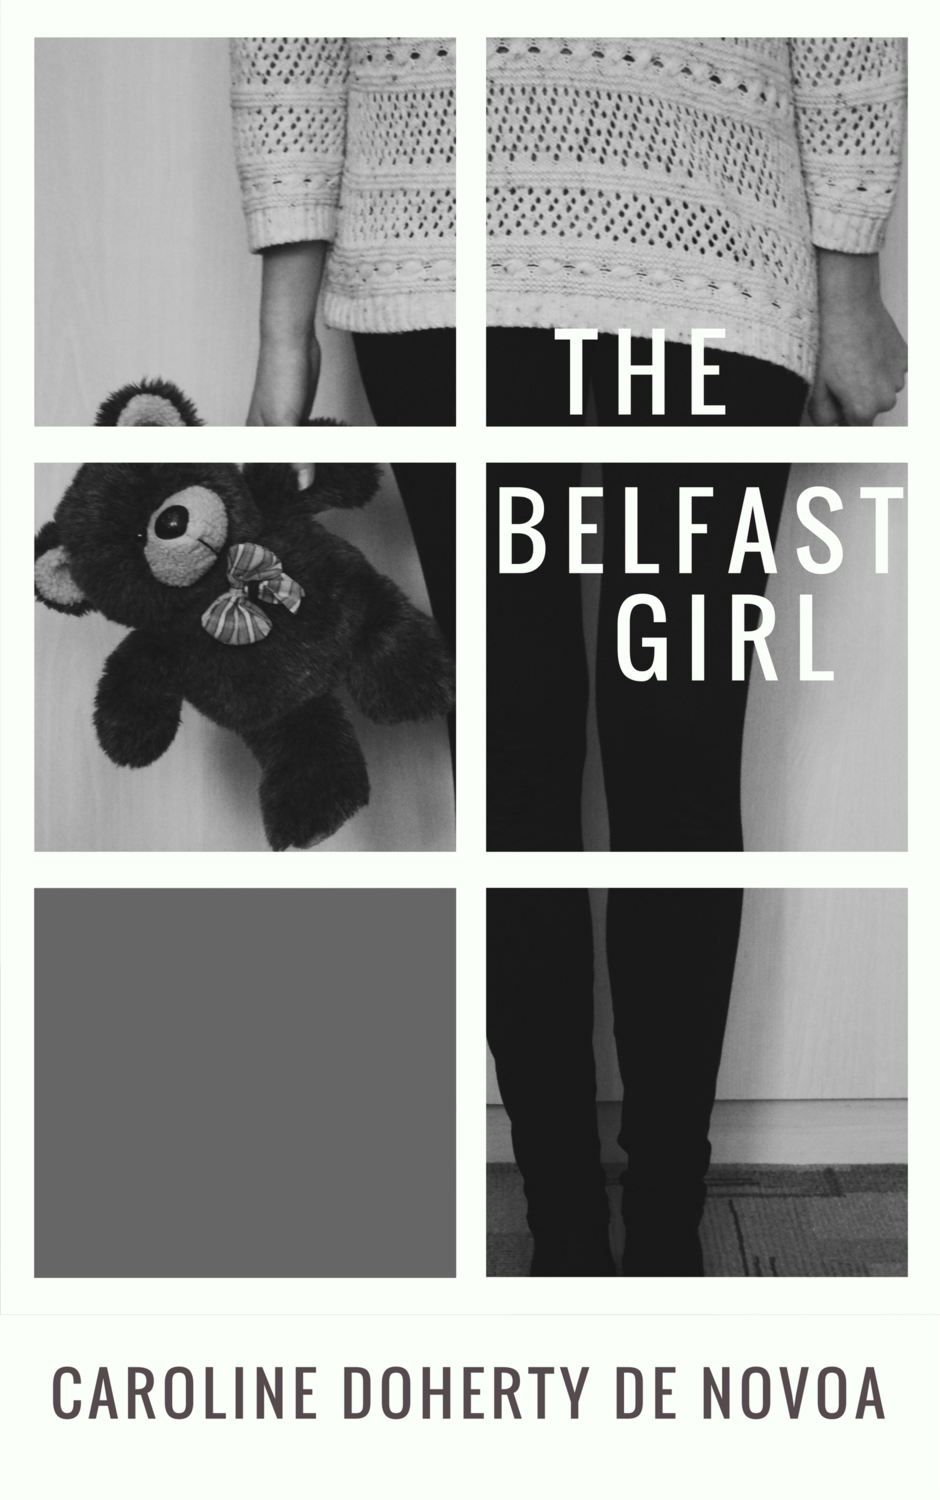 The Belfast Girl